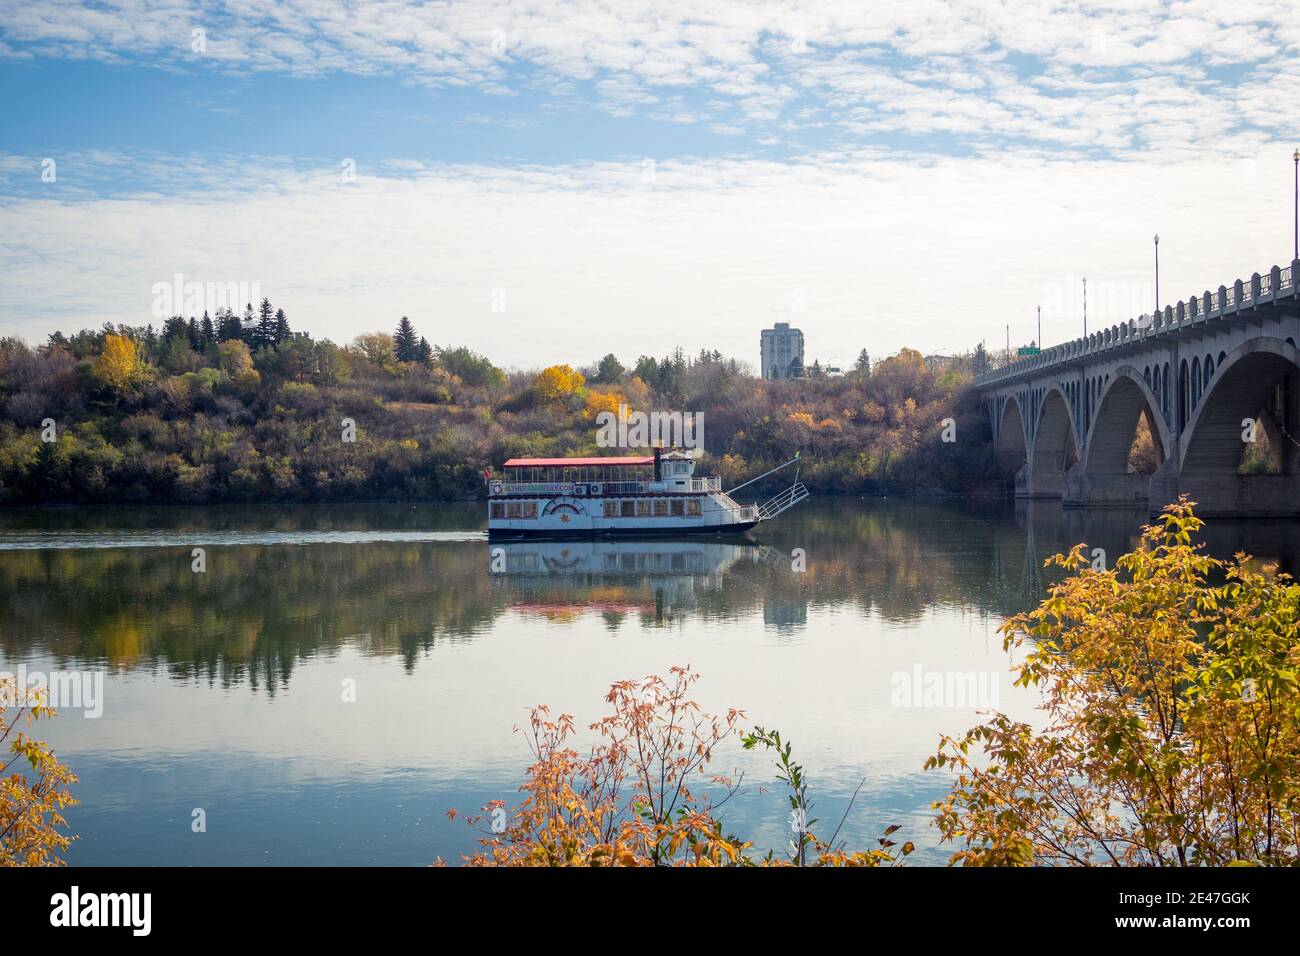 Das Flussboot Prairie Lily fährt an einem frischen Herbsttag auf dem South Saskatchewan River in Saskatoon, Kanada. Die Universitätsbrücke befindet sich auf der rechten Seite. Stockfoto